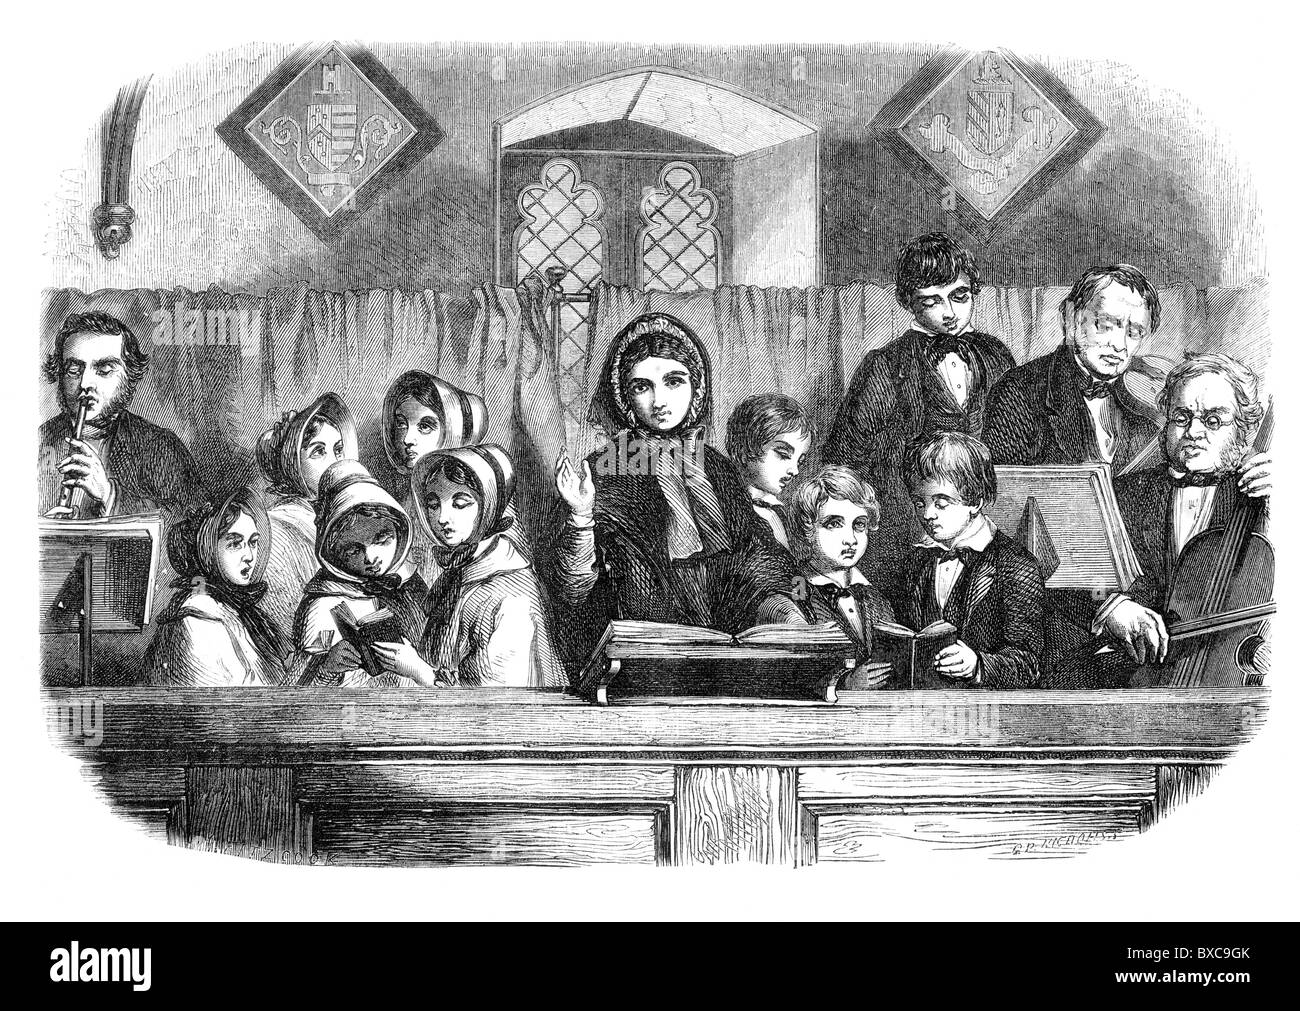 Kinder singen in der Kirche des 19. Jahrhunderts; Schwarz und weiß-Abbildung; Stockfoto